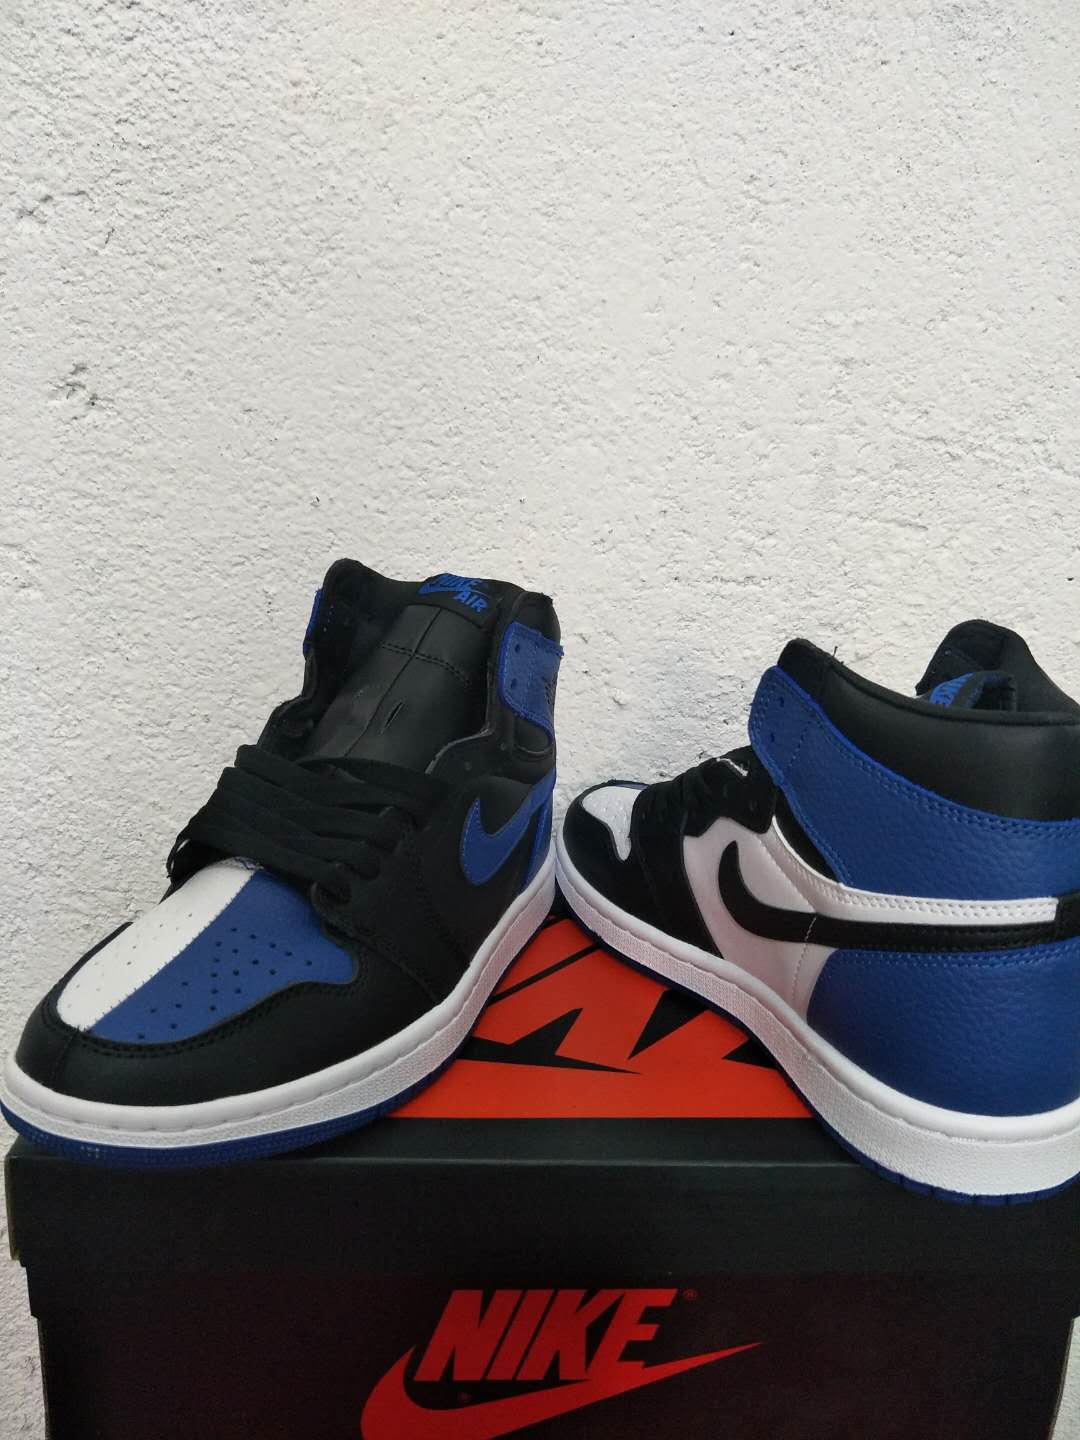 New Air Jordan 1 Clown Blue Black White Shoes